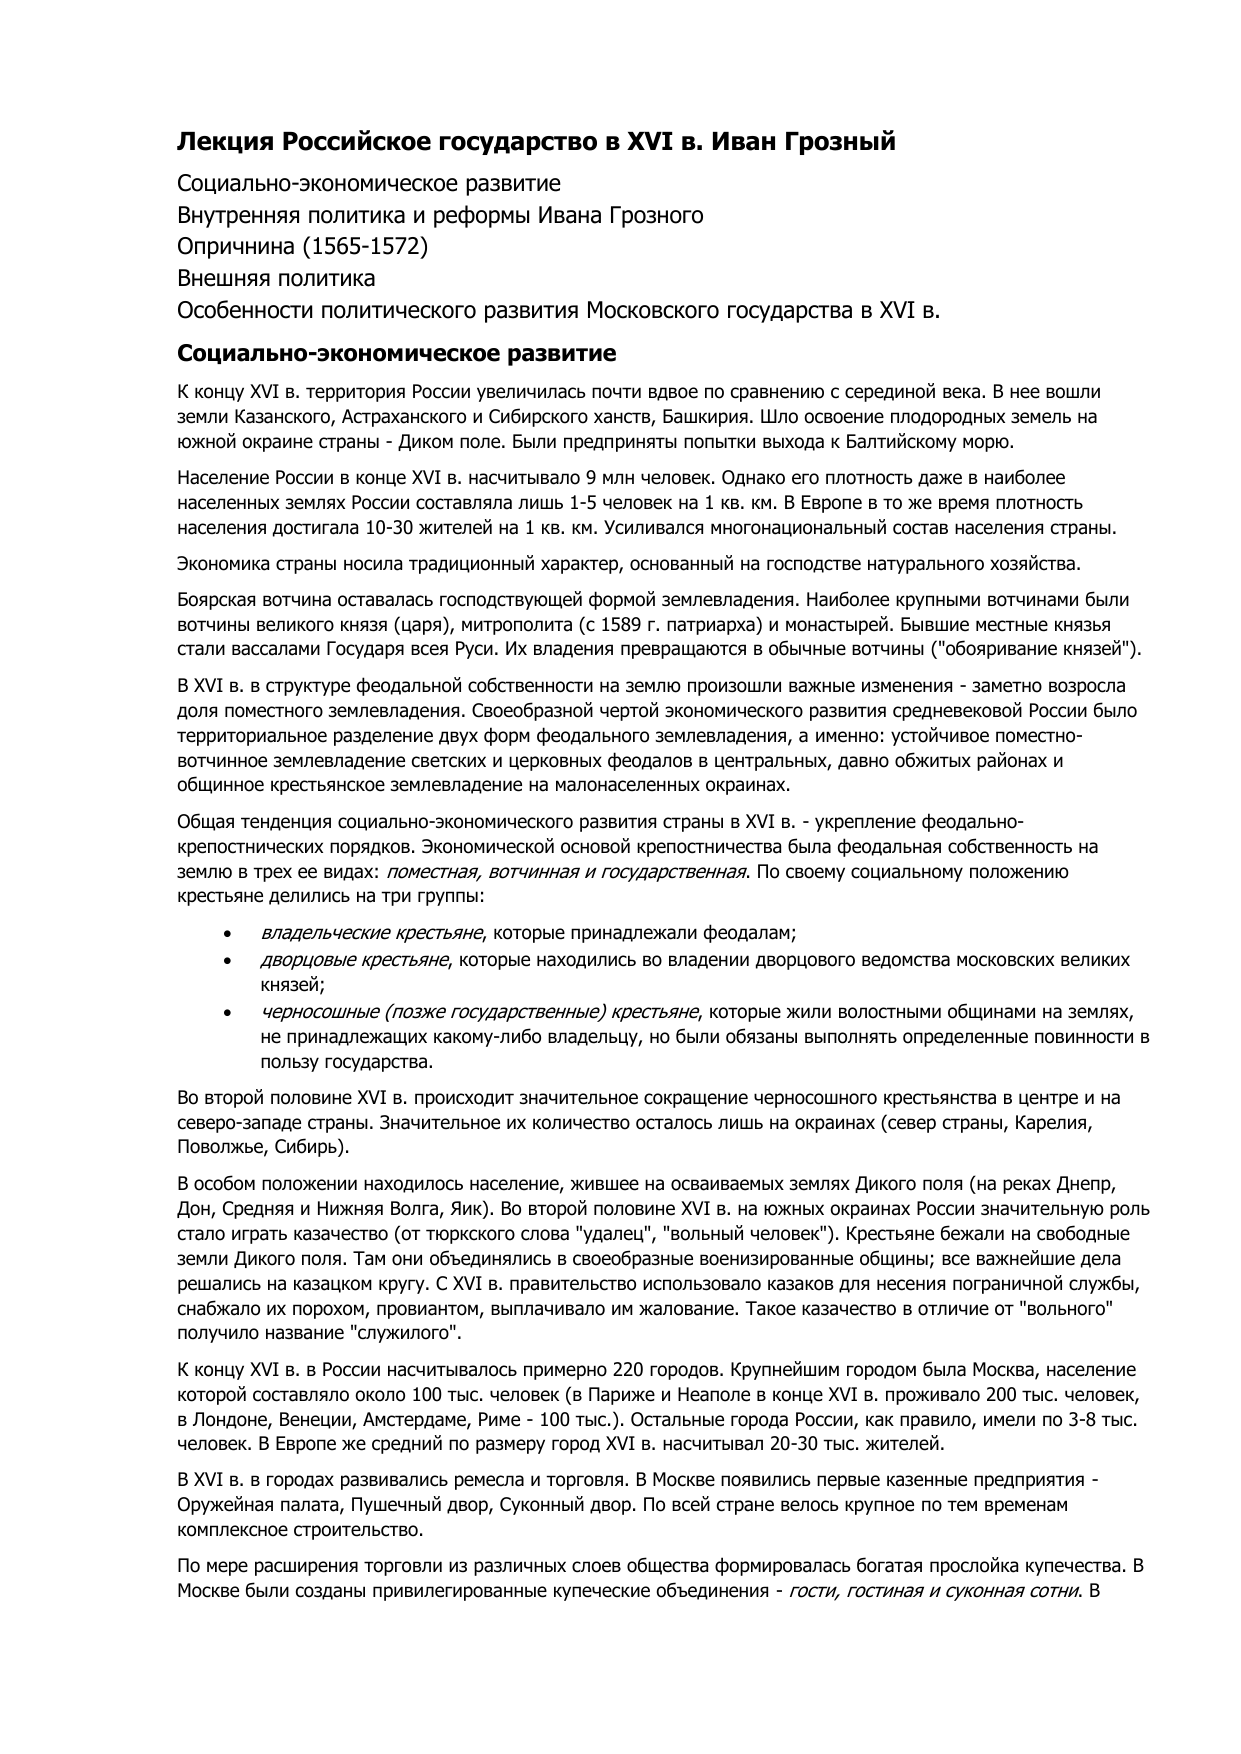 Контрольная работа по теме Иван Грозный: реформы и опричнина